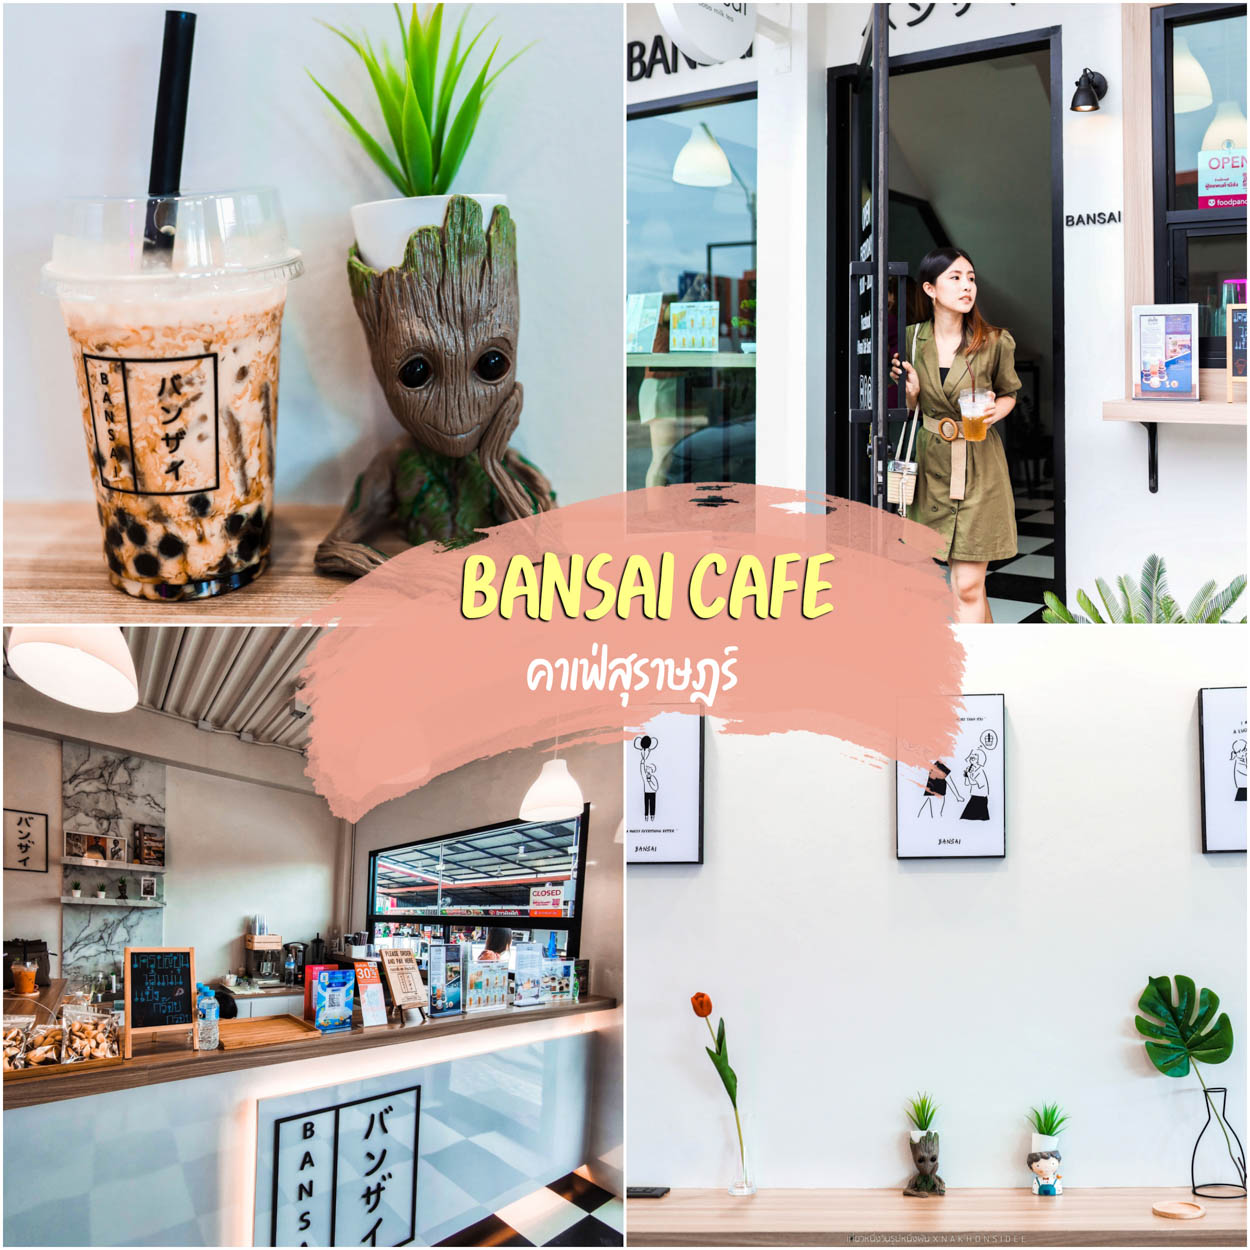 Bansai cafe คาเฟ่สุราษฎร์ ชานมไข่มุกมินิมอลสไตล์ญี่ปุ่น พ่นไฟปังๆ